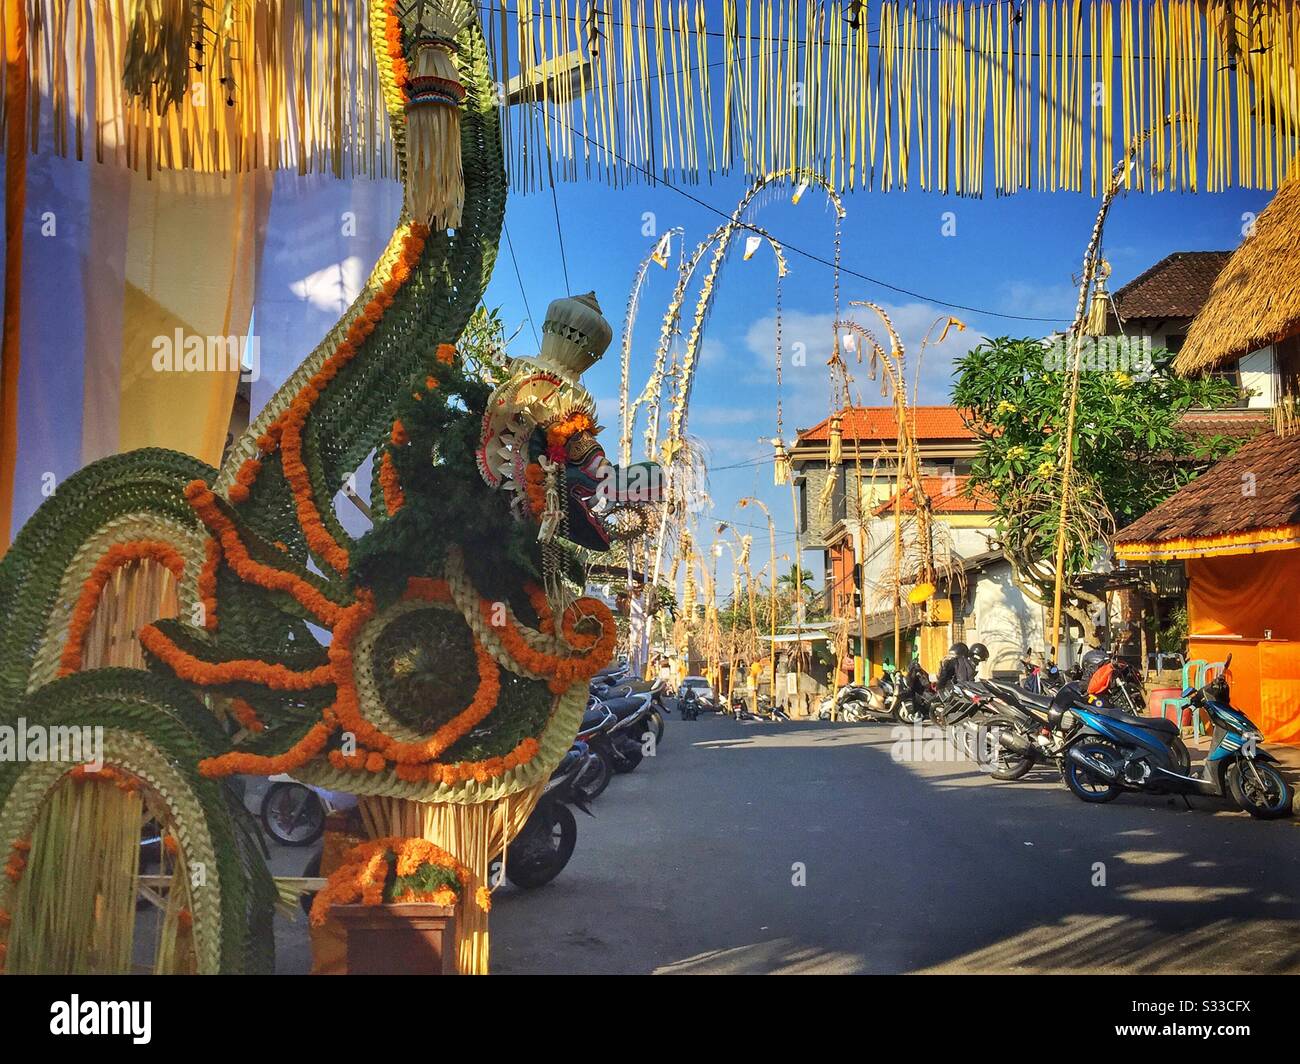 Le papier peint traditionnel maché et le dragon tissé de feuilles de palmier, une décoration de rue pour un festival religieux à Ubud, Bali, Indonésie Banque D'Images